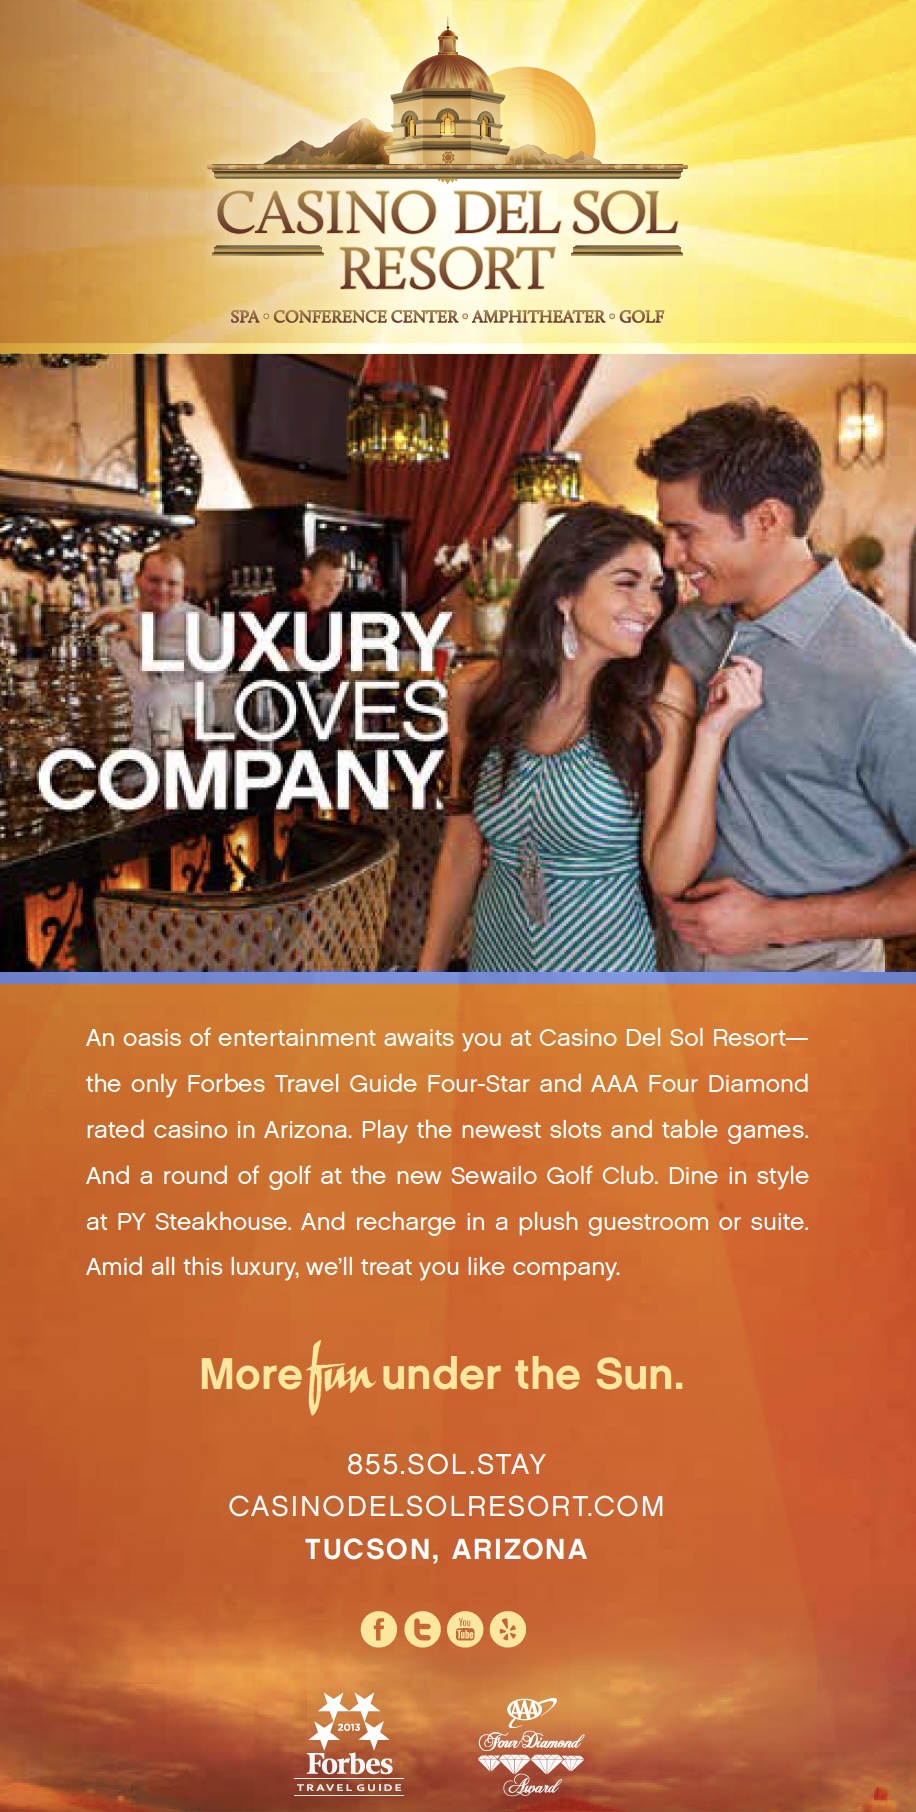 Casino del Sol - Luxury Loves Company